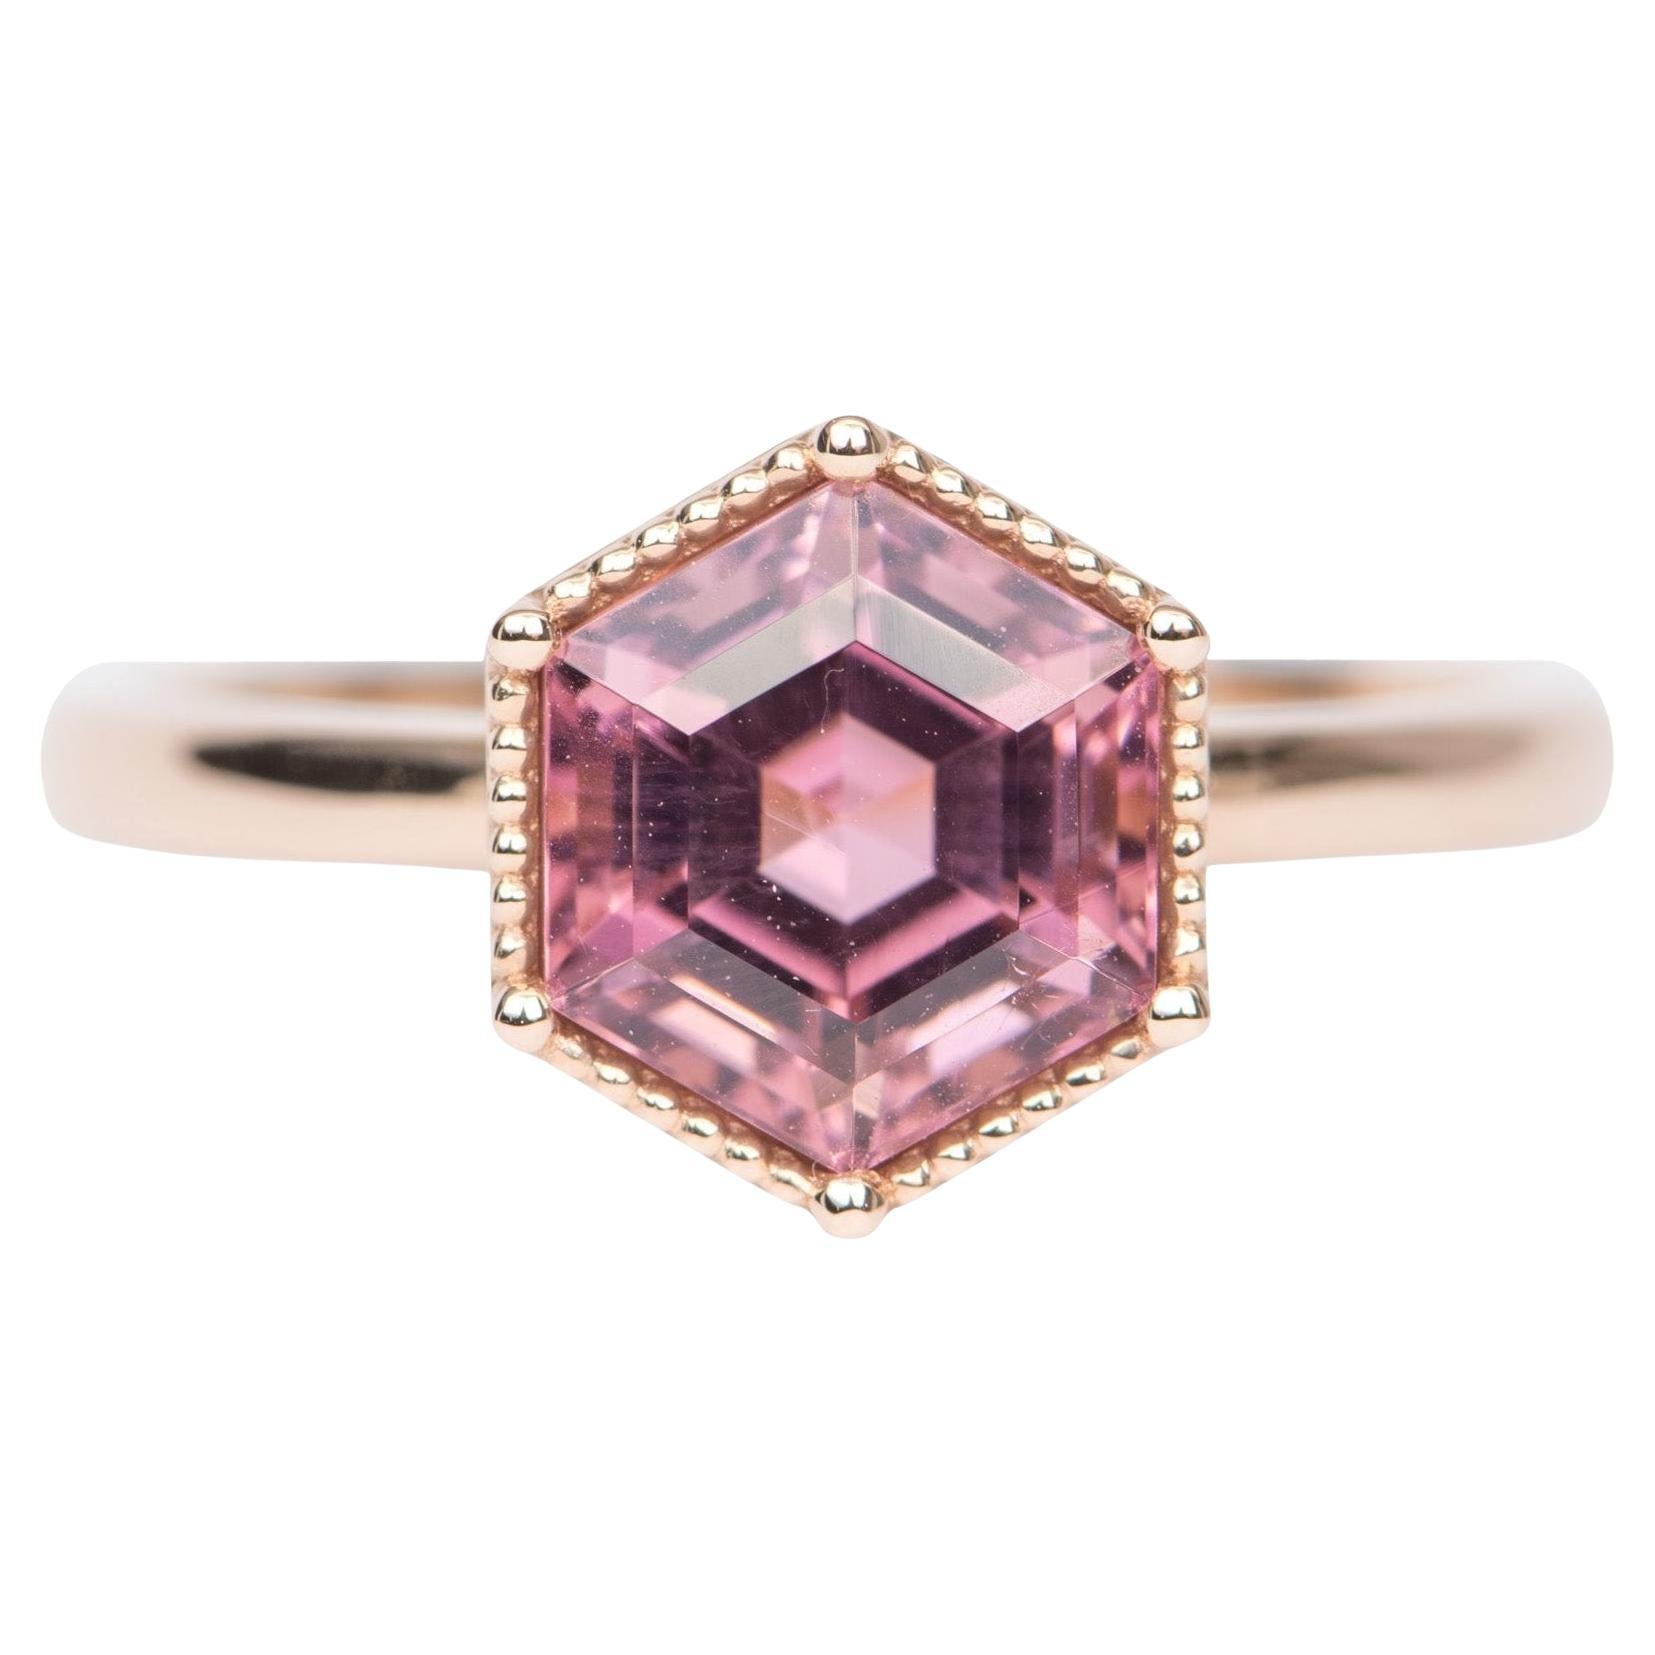 2.78ct Hexagon Pink Tourmaline 14k Rose Gold Engagement Ring R6411